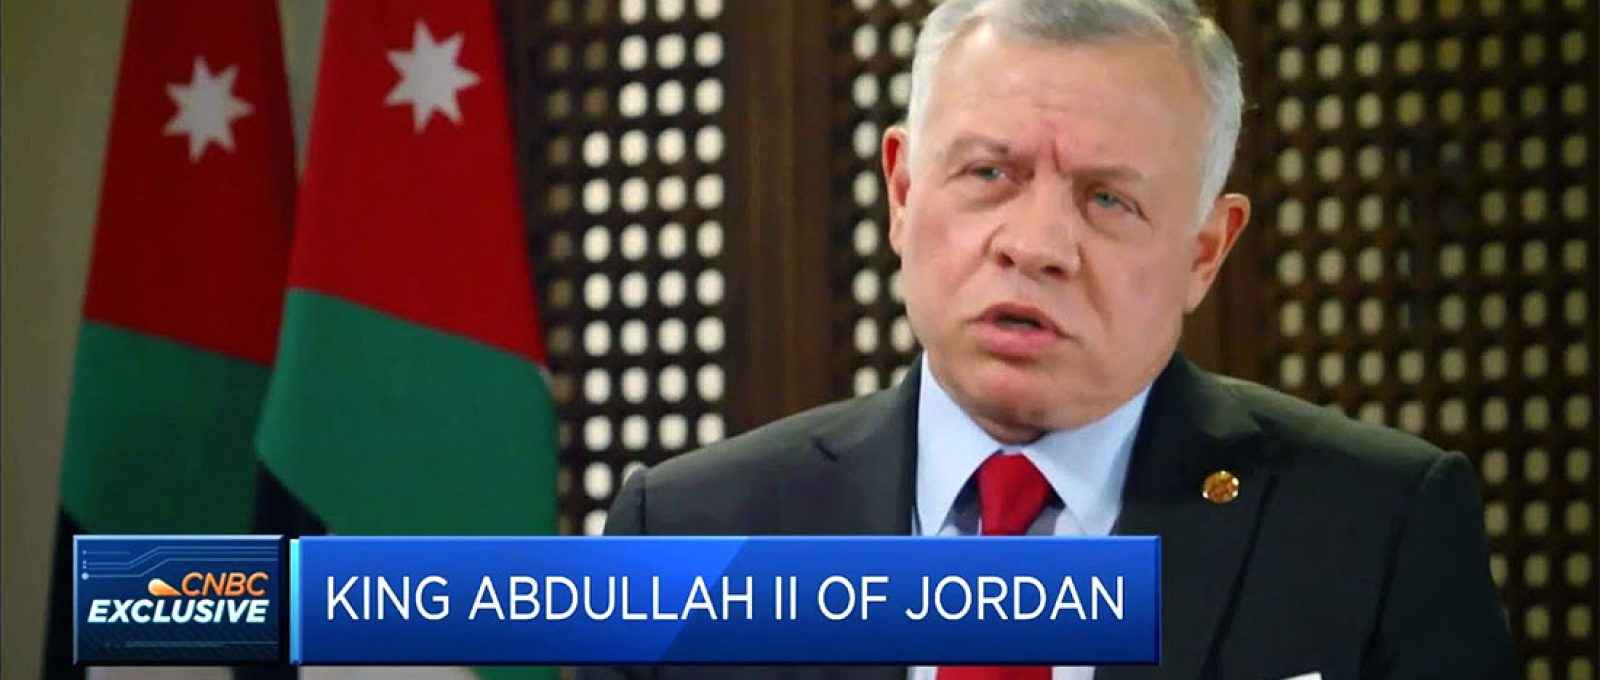 O rei Abdullah II da Jordânia em entrevista à rede americana CNBC (Captura de tela/CNBC).